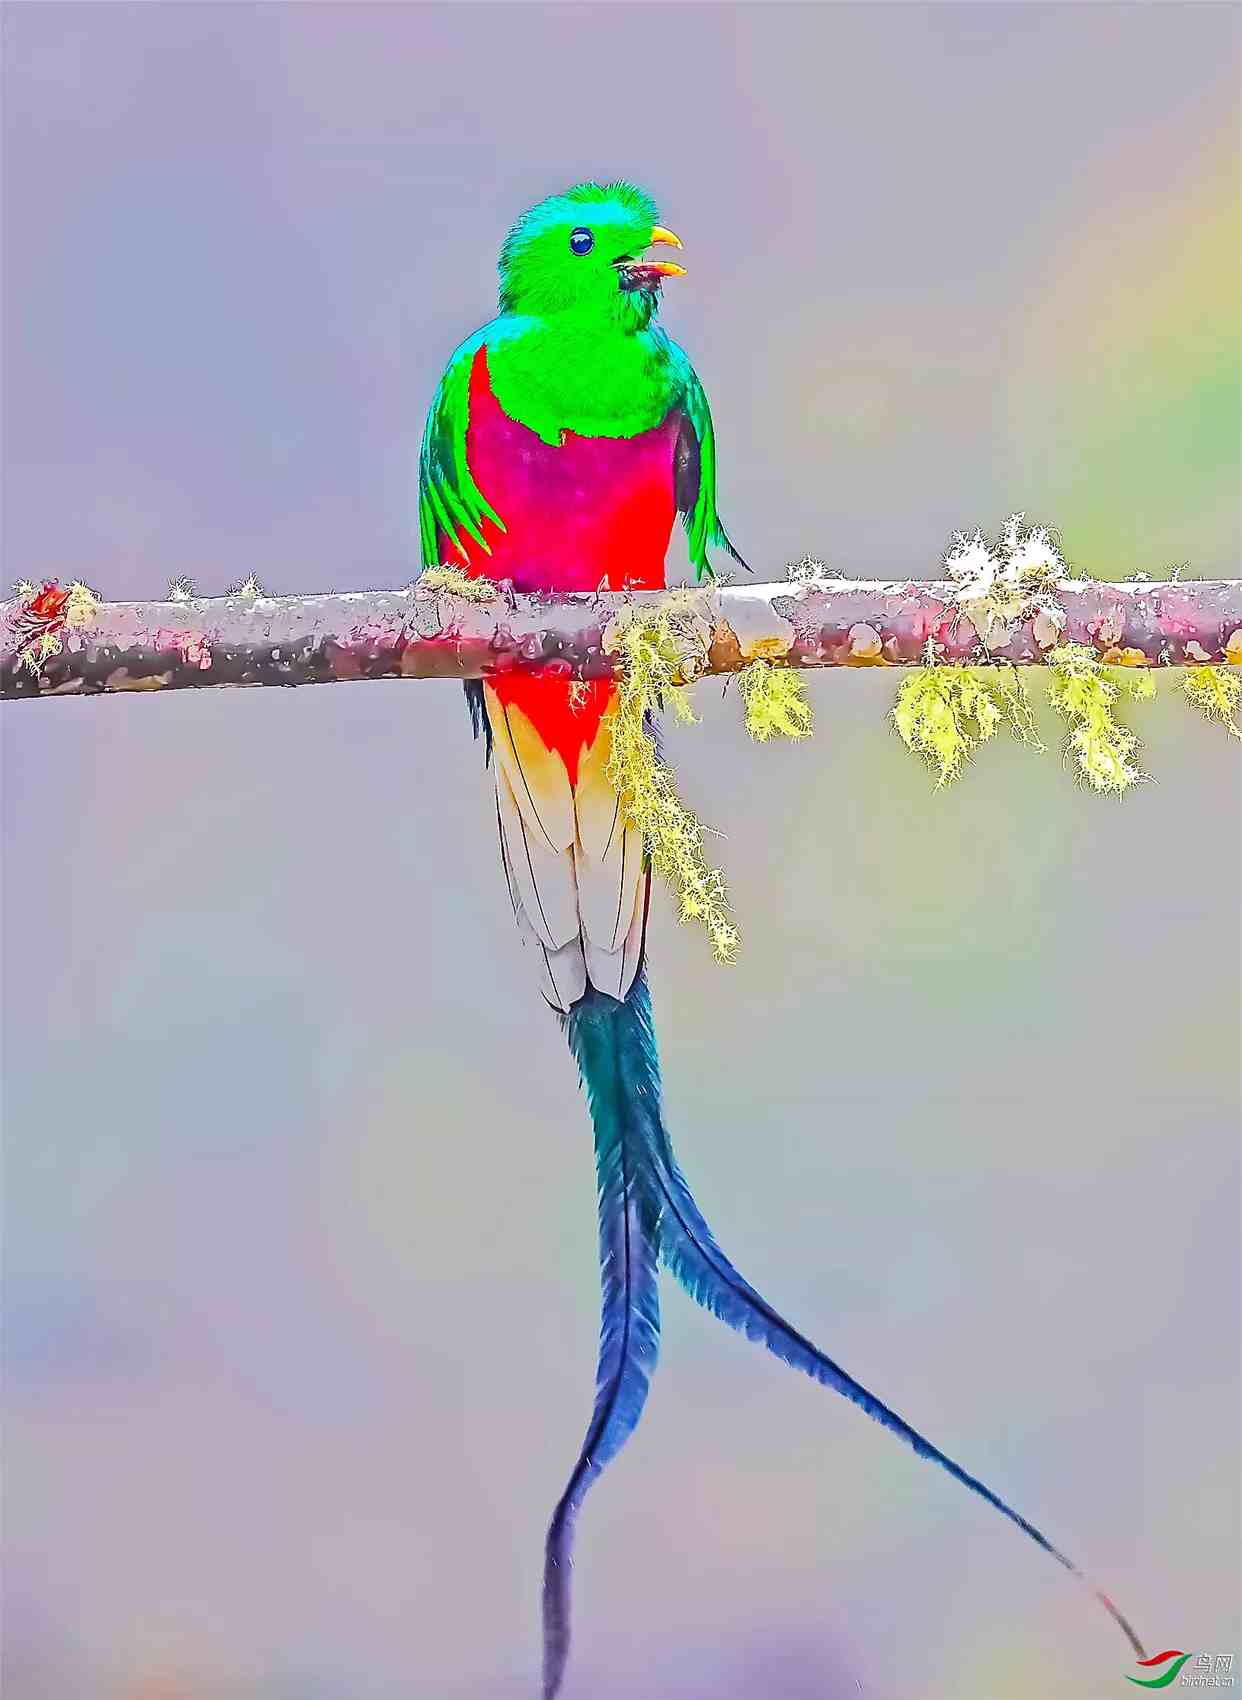 凤尾绿咬鹃～玛雅人的圣鸟